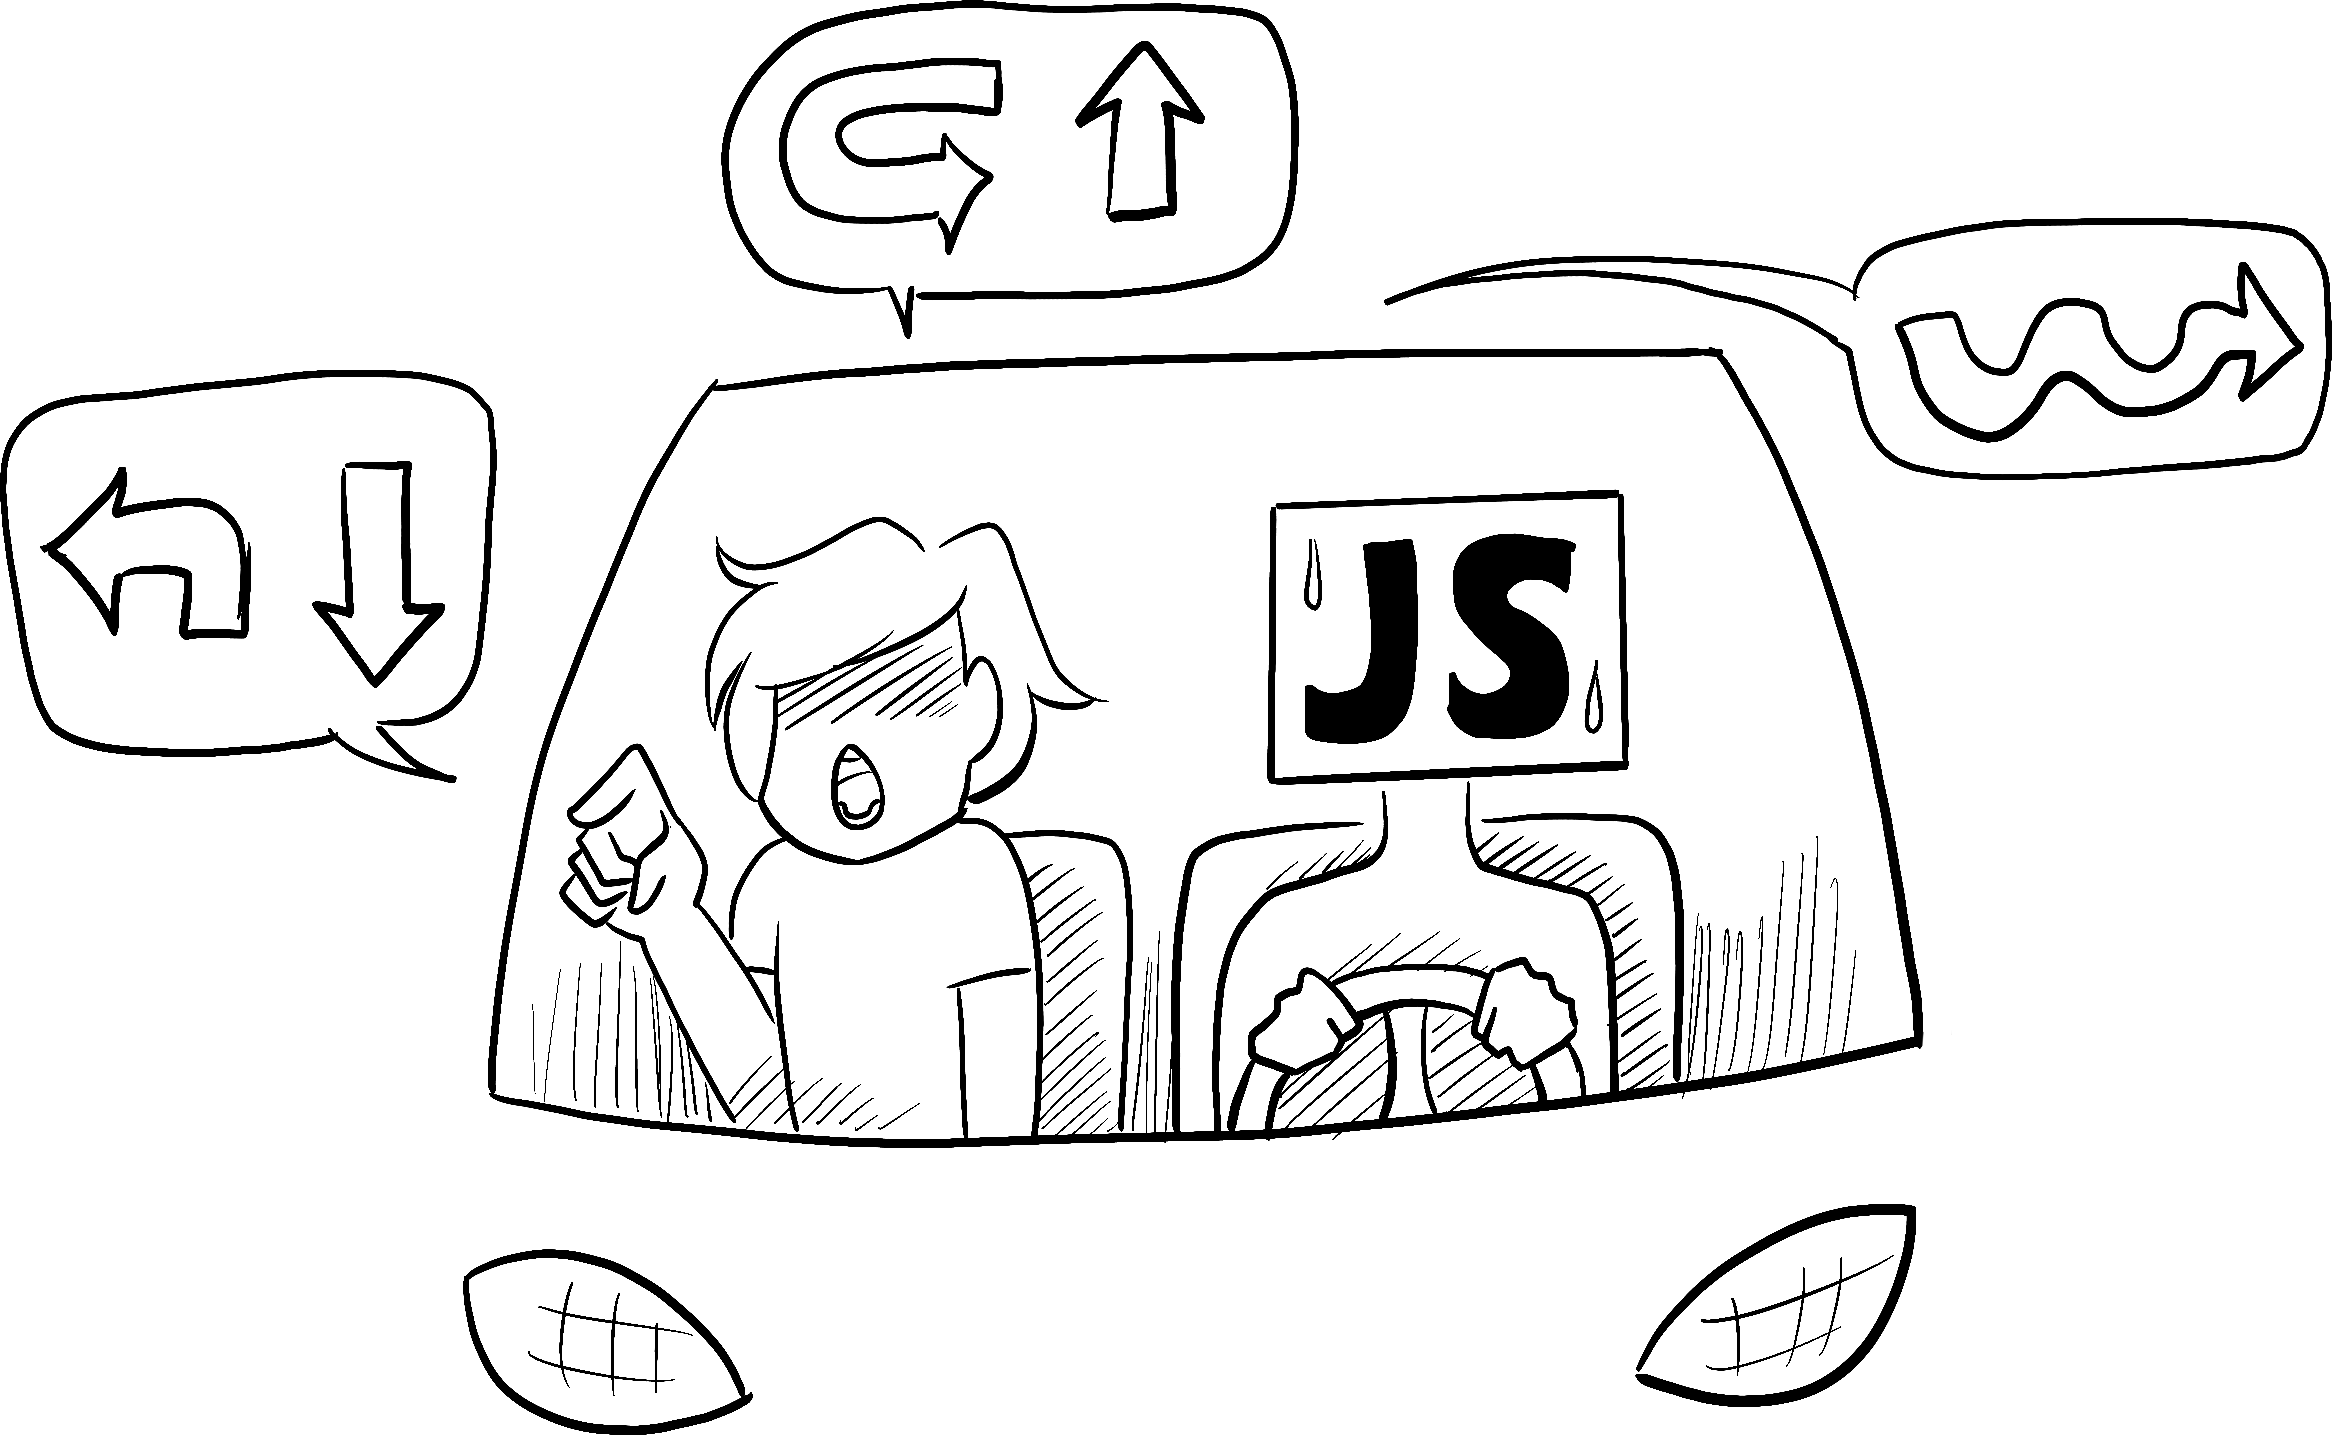 En un coche conducido por una persona con apariencia ansiosa, representando a JavaScript, un pasajero le ordena al conductor a realizar una complicada secuencia de giros e indicaciones.